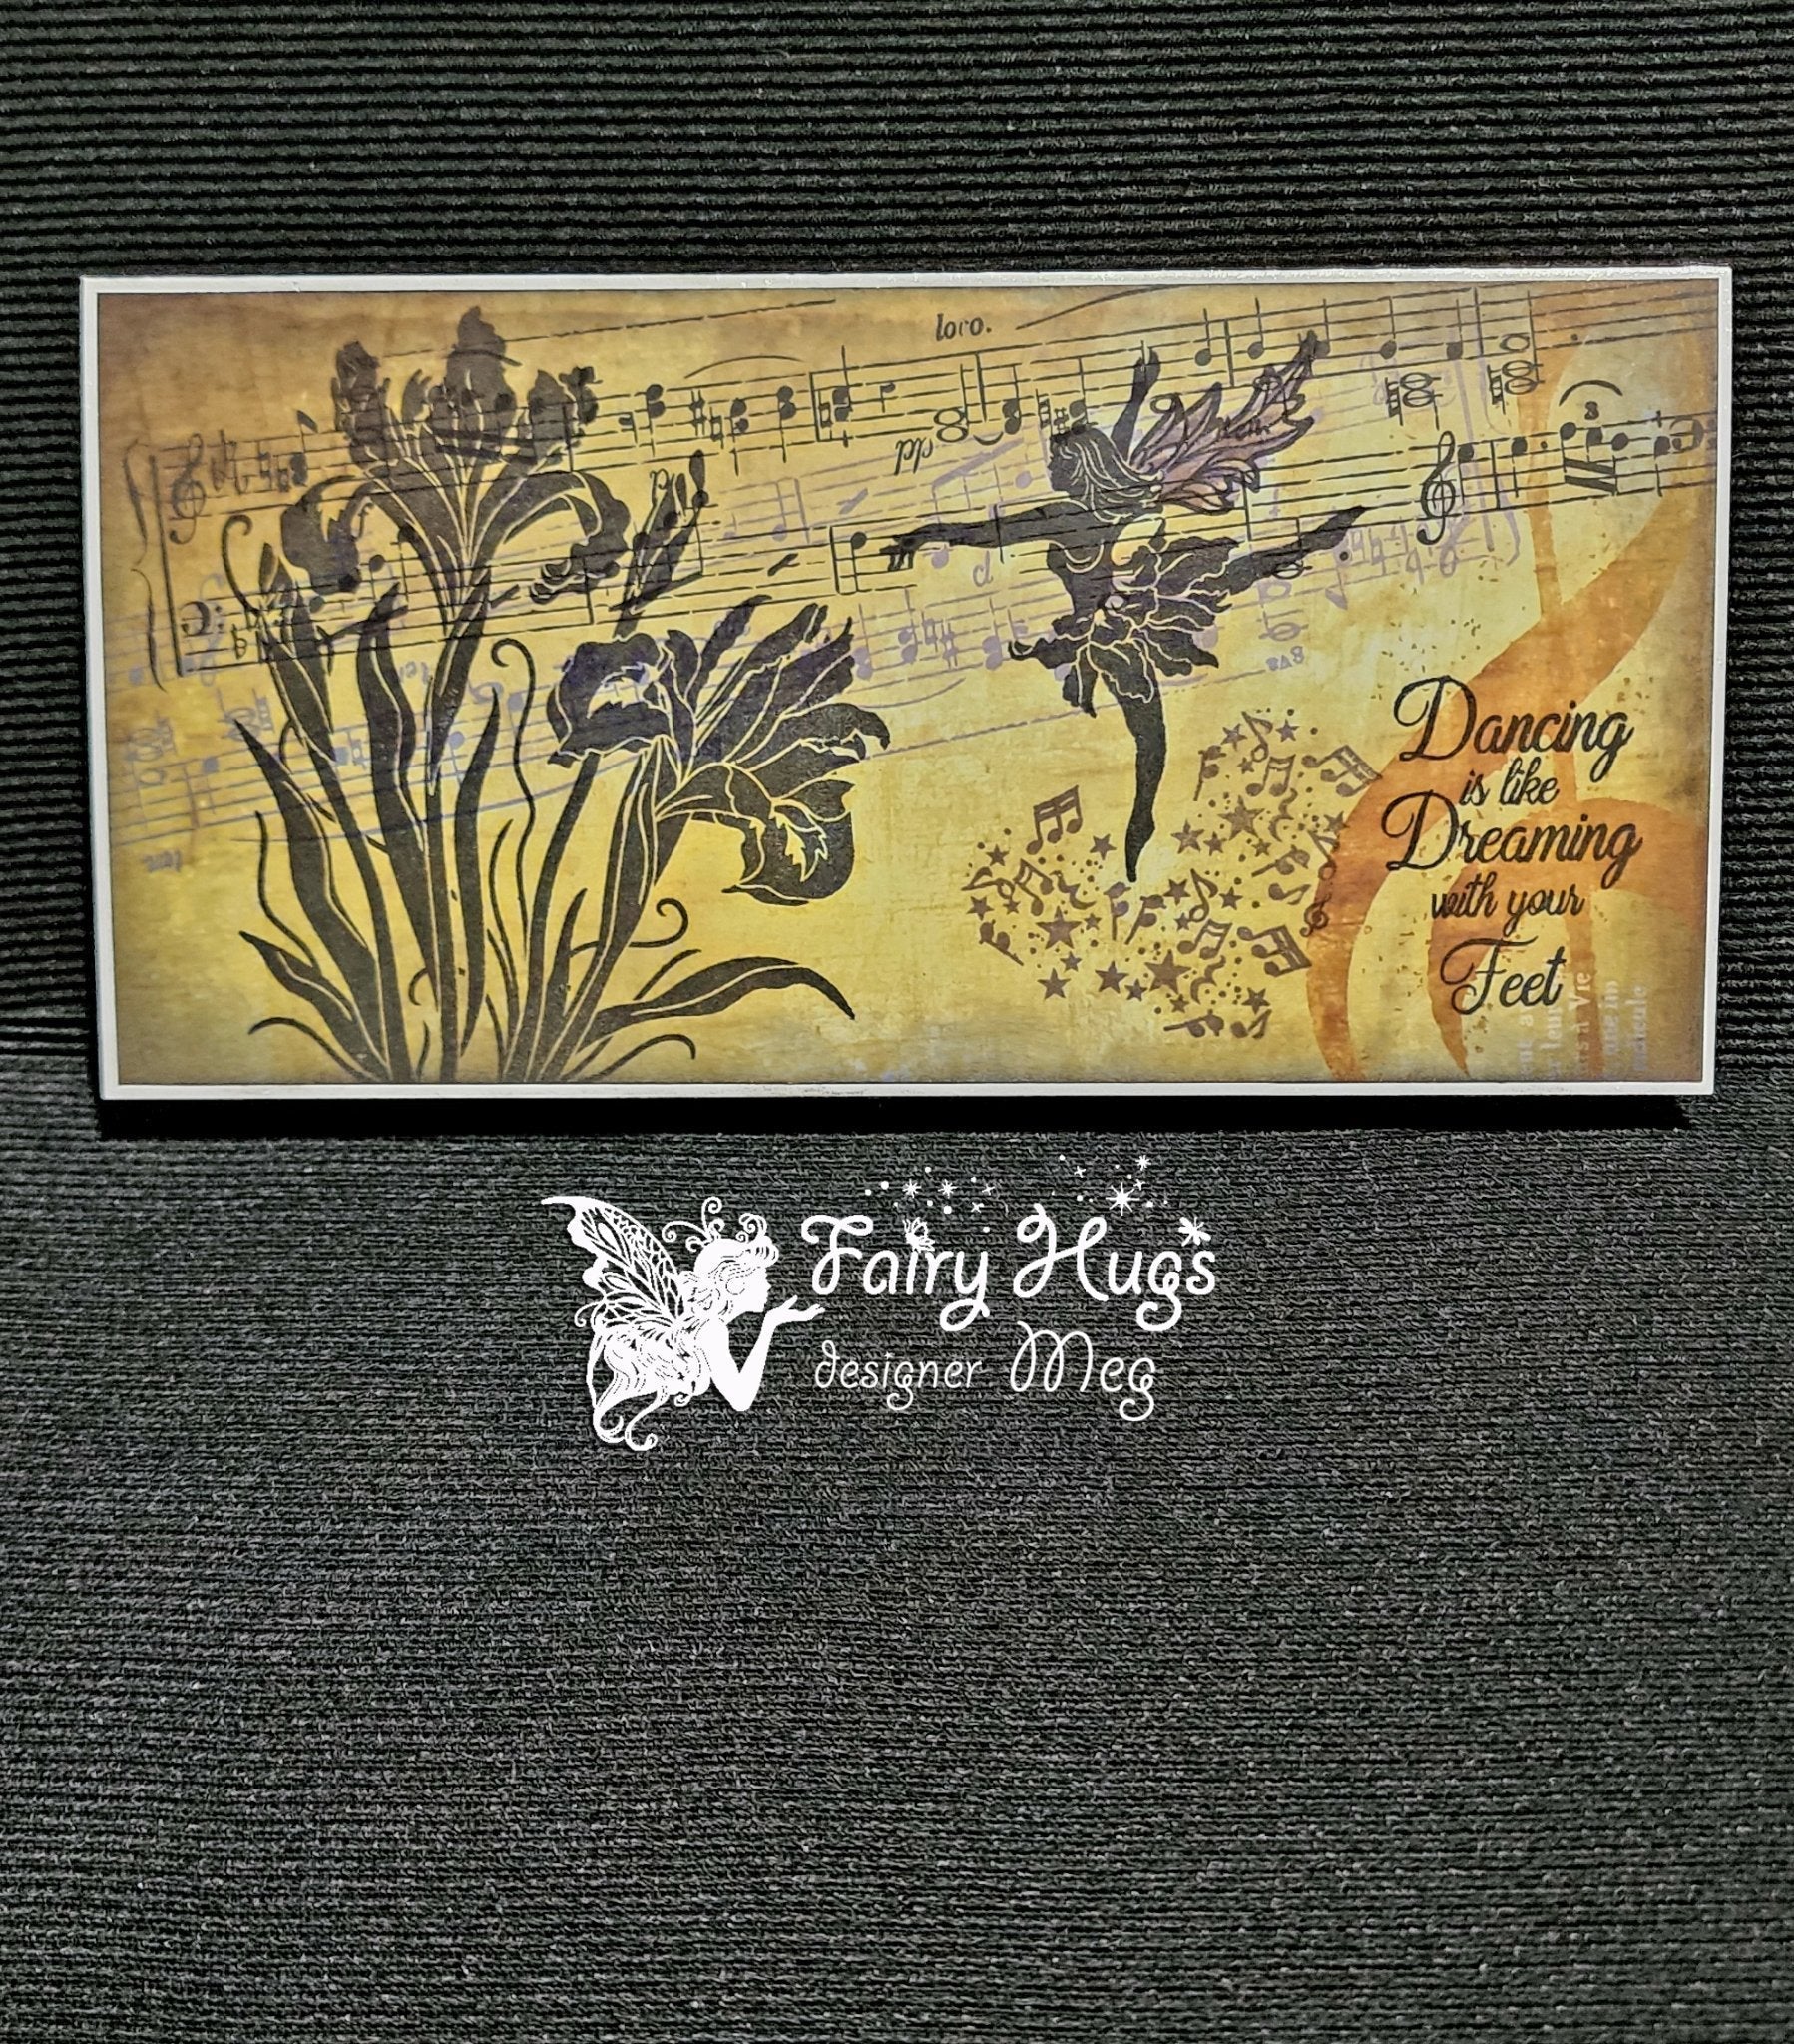 Fairy Hugs Stamps - Carol's Iris